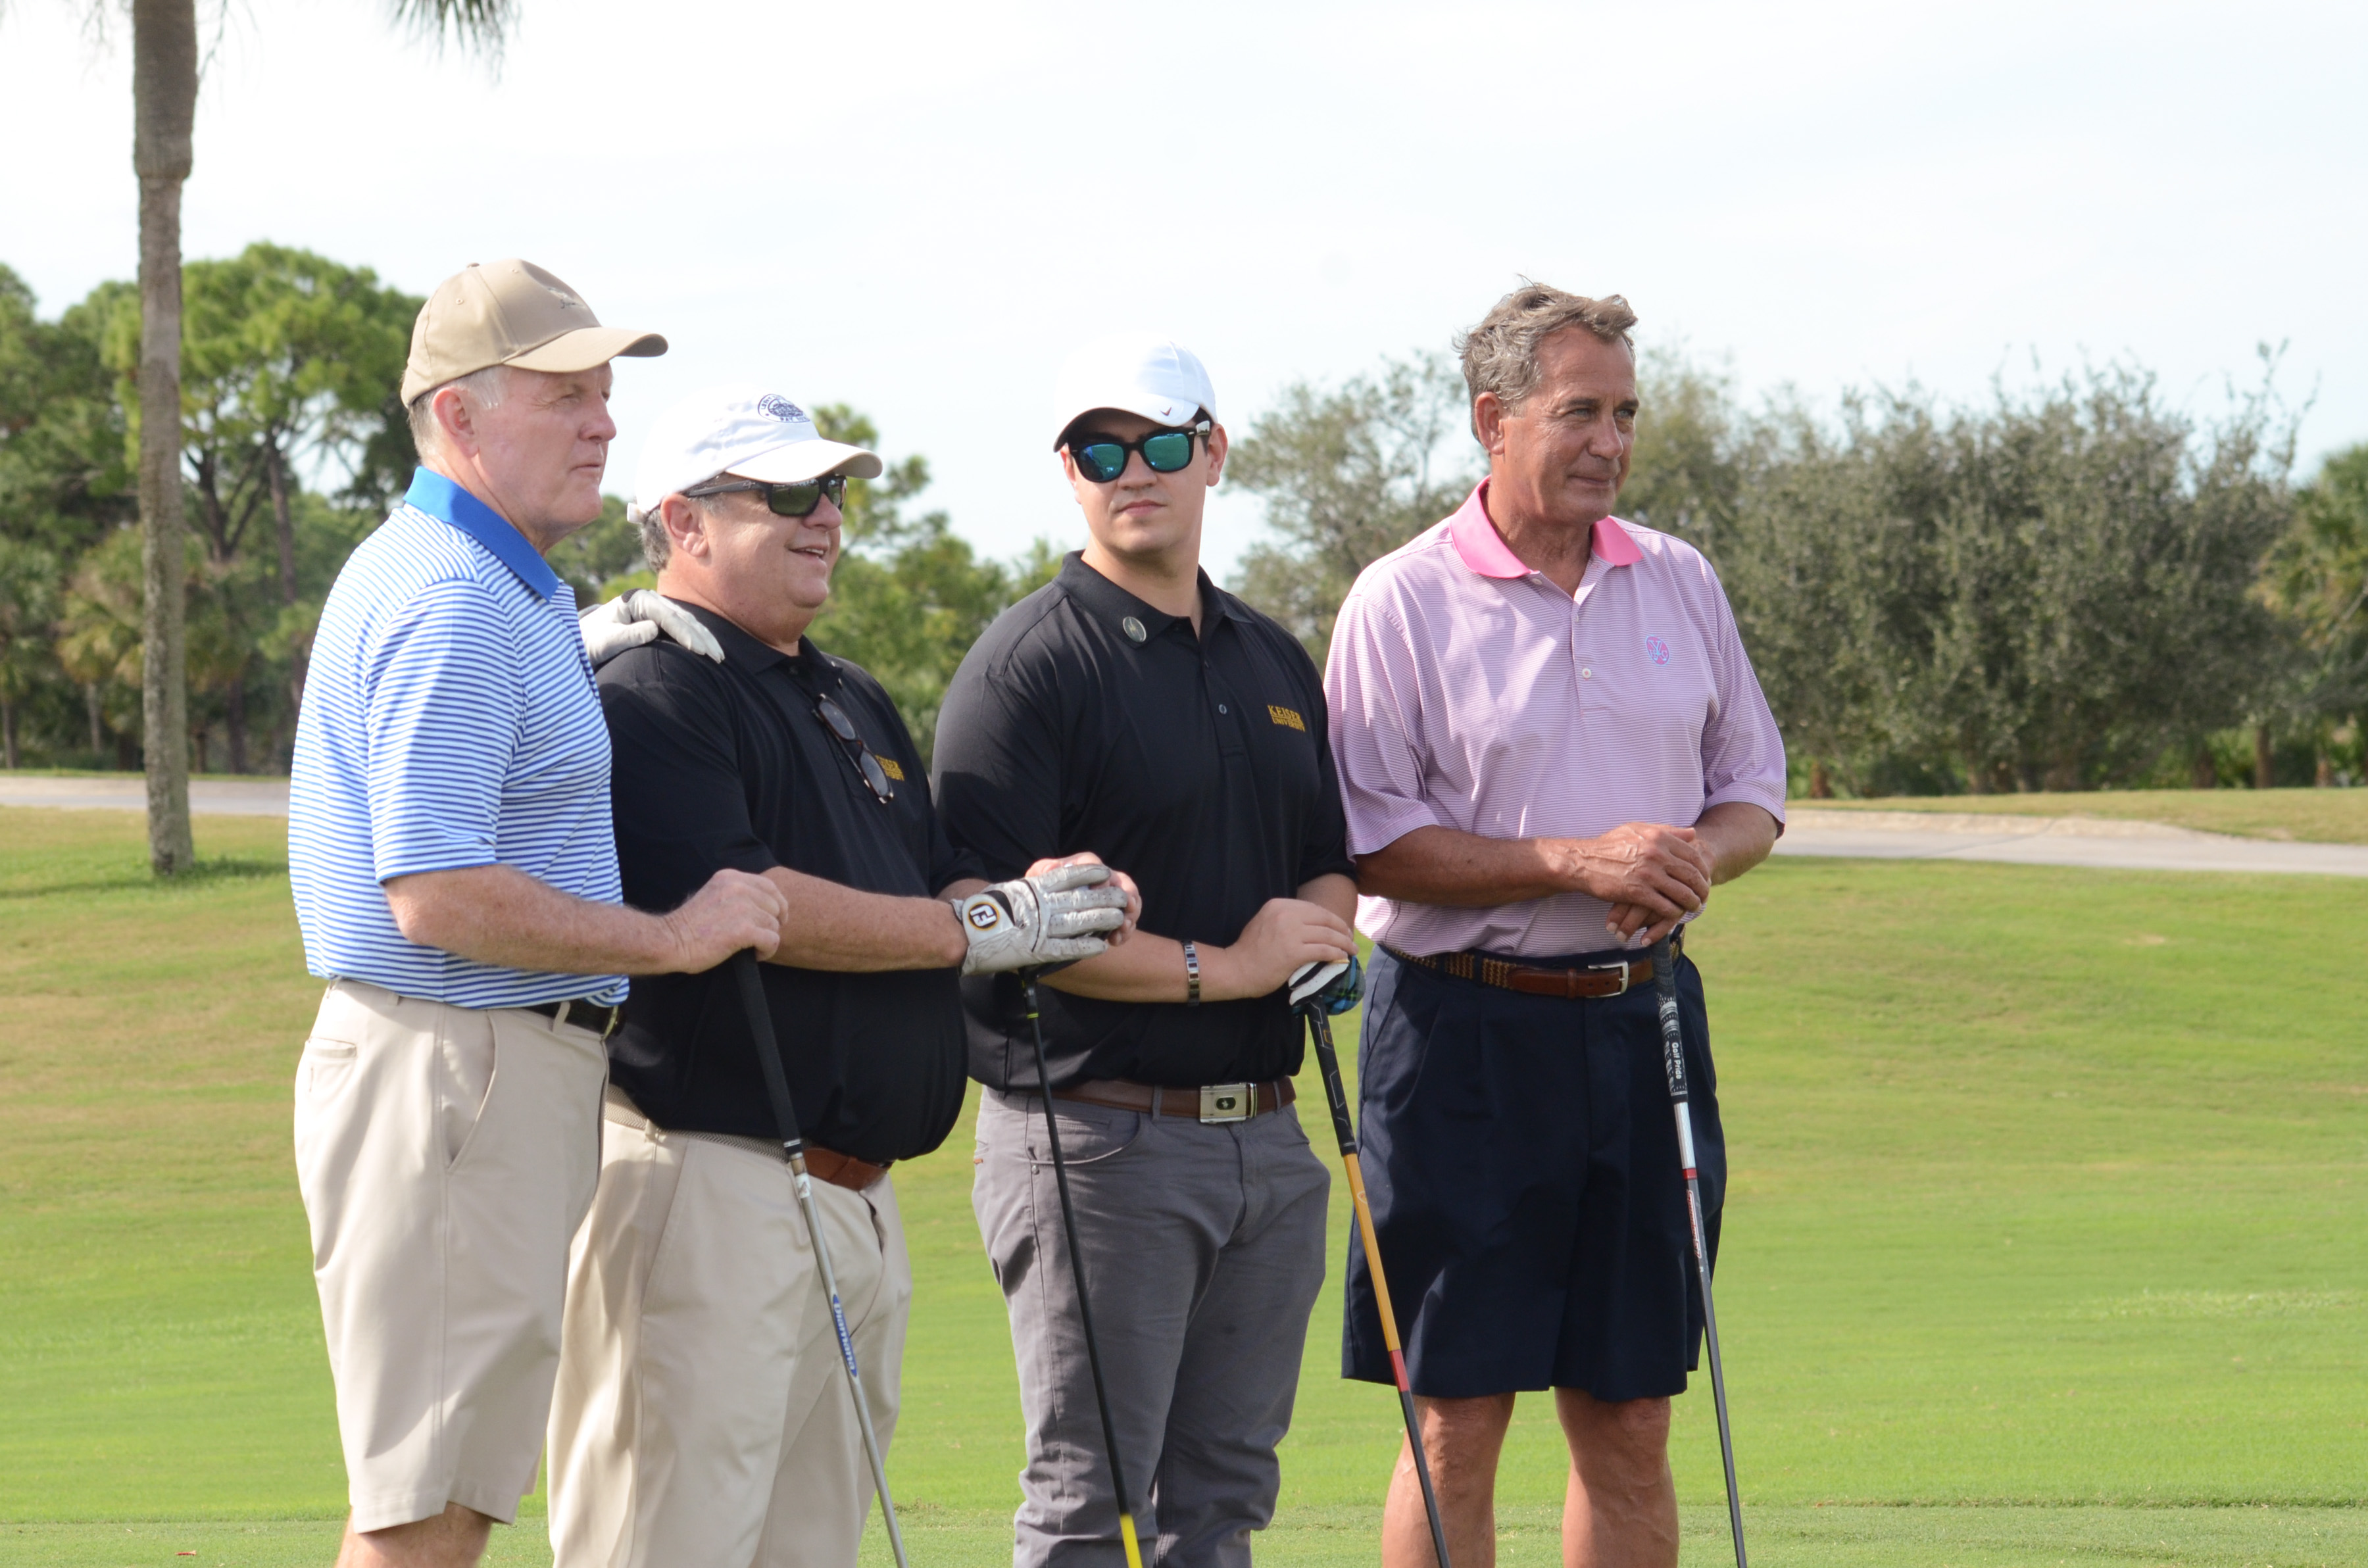 Keiser University Golf Classic Attendees (L-R): Bob Griese, Dr. Keiser, Robert Keiser, and Fmr Speaker John Boehner